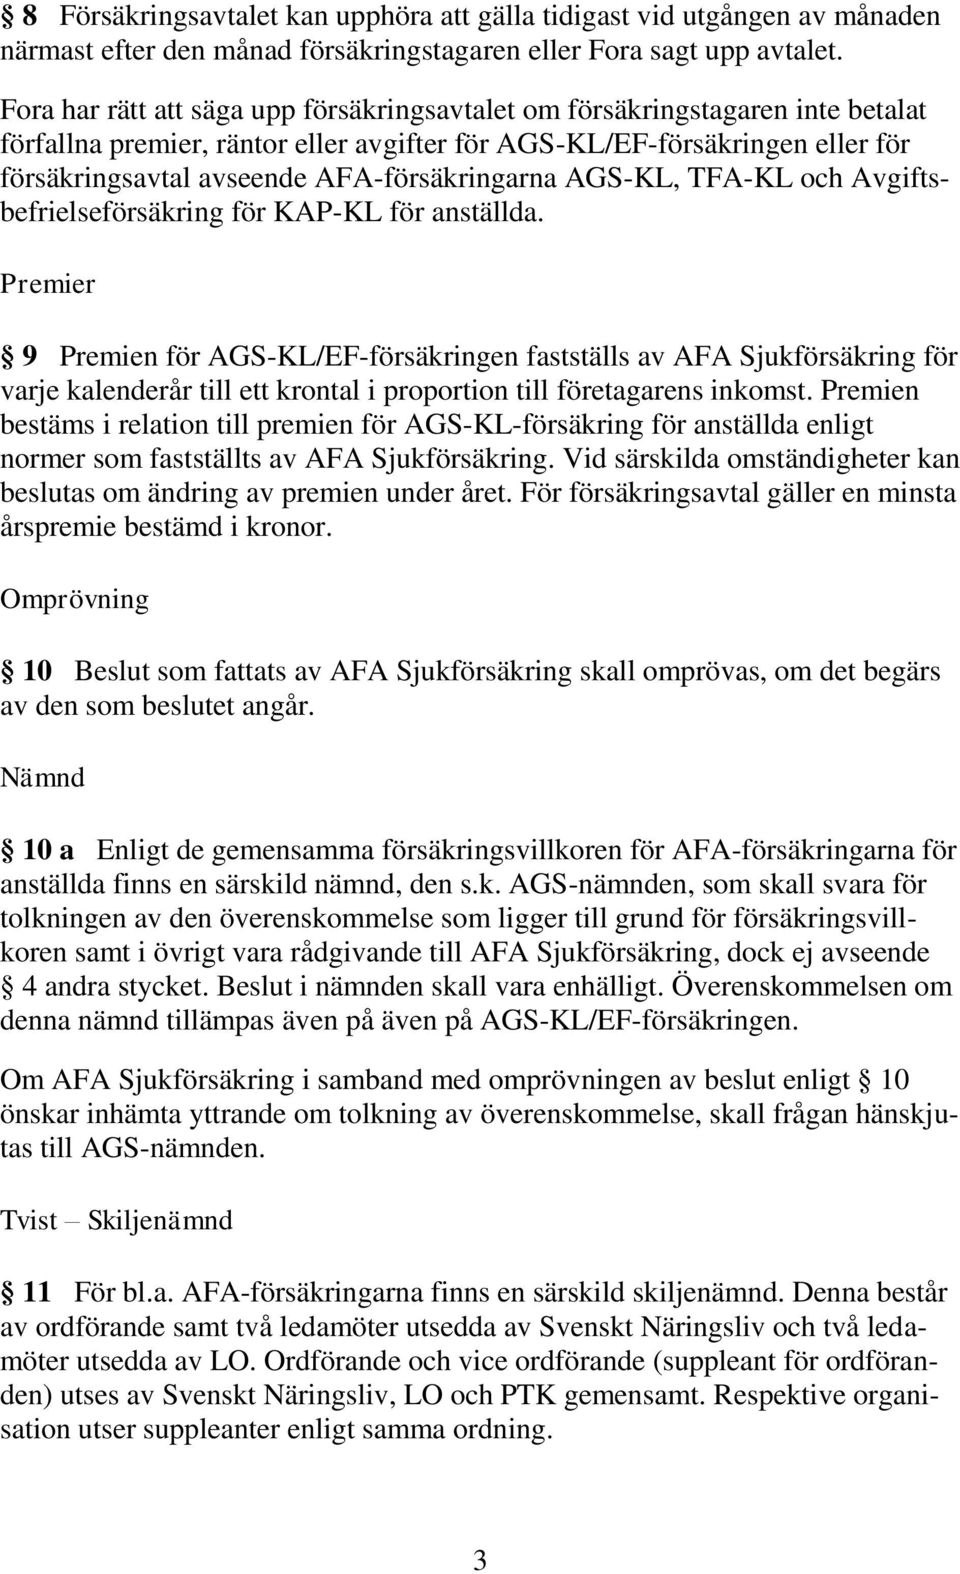 AFA-försäkringarna AGS-KL, TFA-KL och Avgiftsbefrielseförsäkring för KAP-KL för anställda.